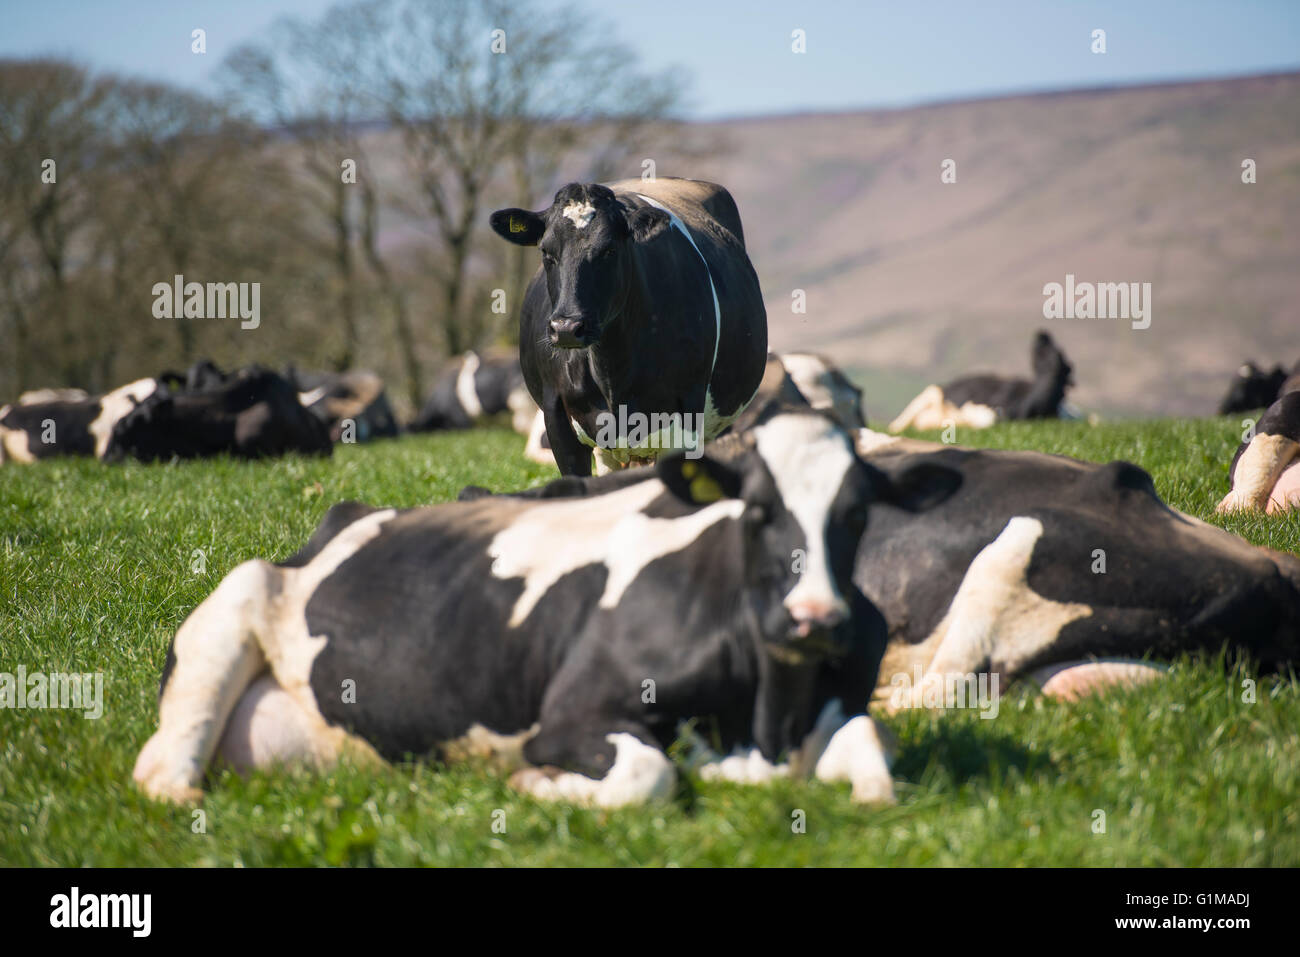 Vaches laitières noires et blanches dans un champ d'herbe. Lancashire. ROYAUME-UNI Banque D'Images